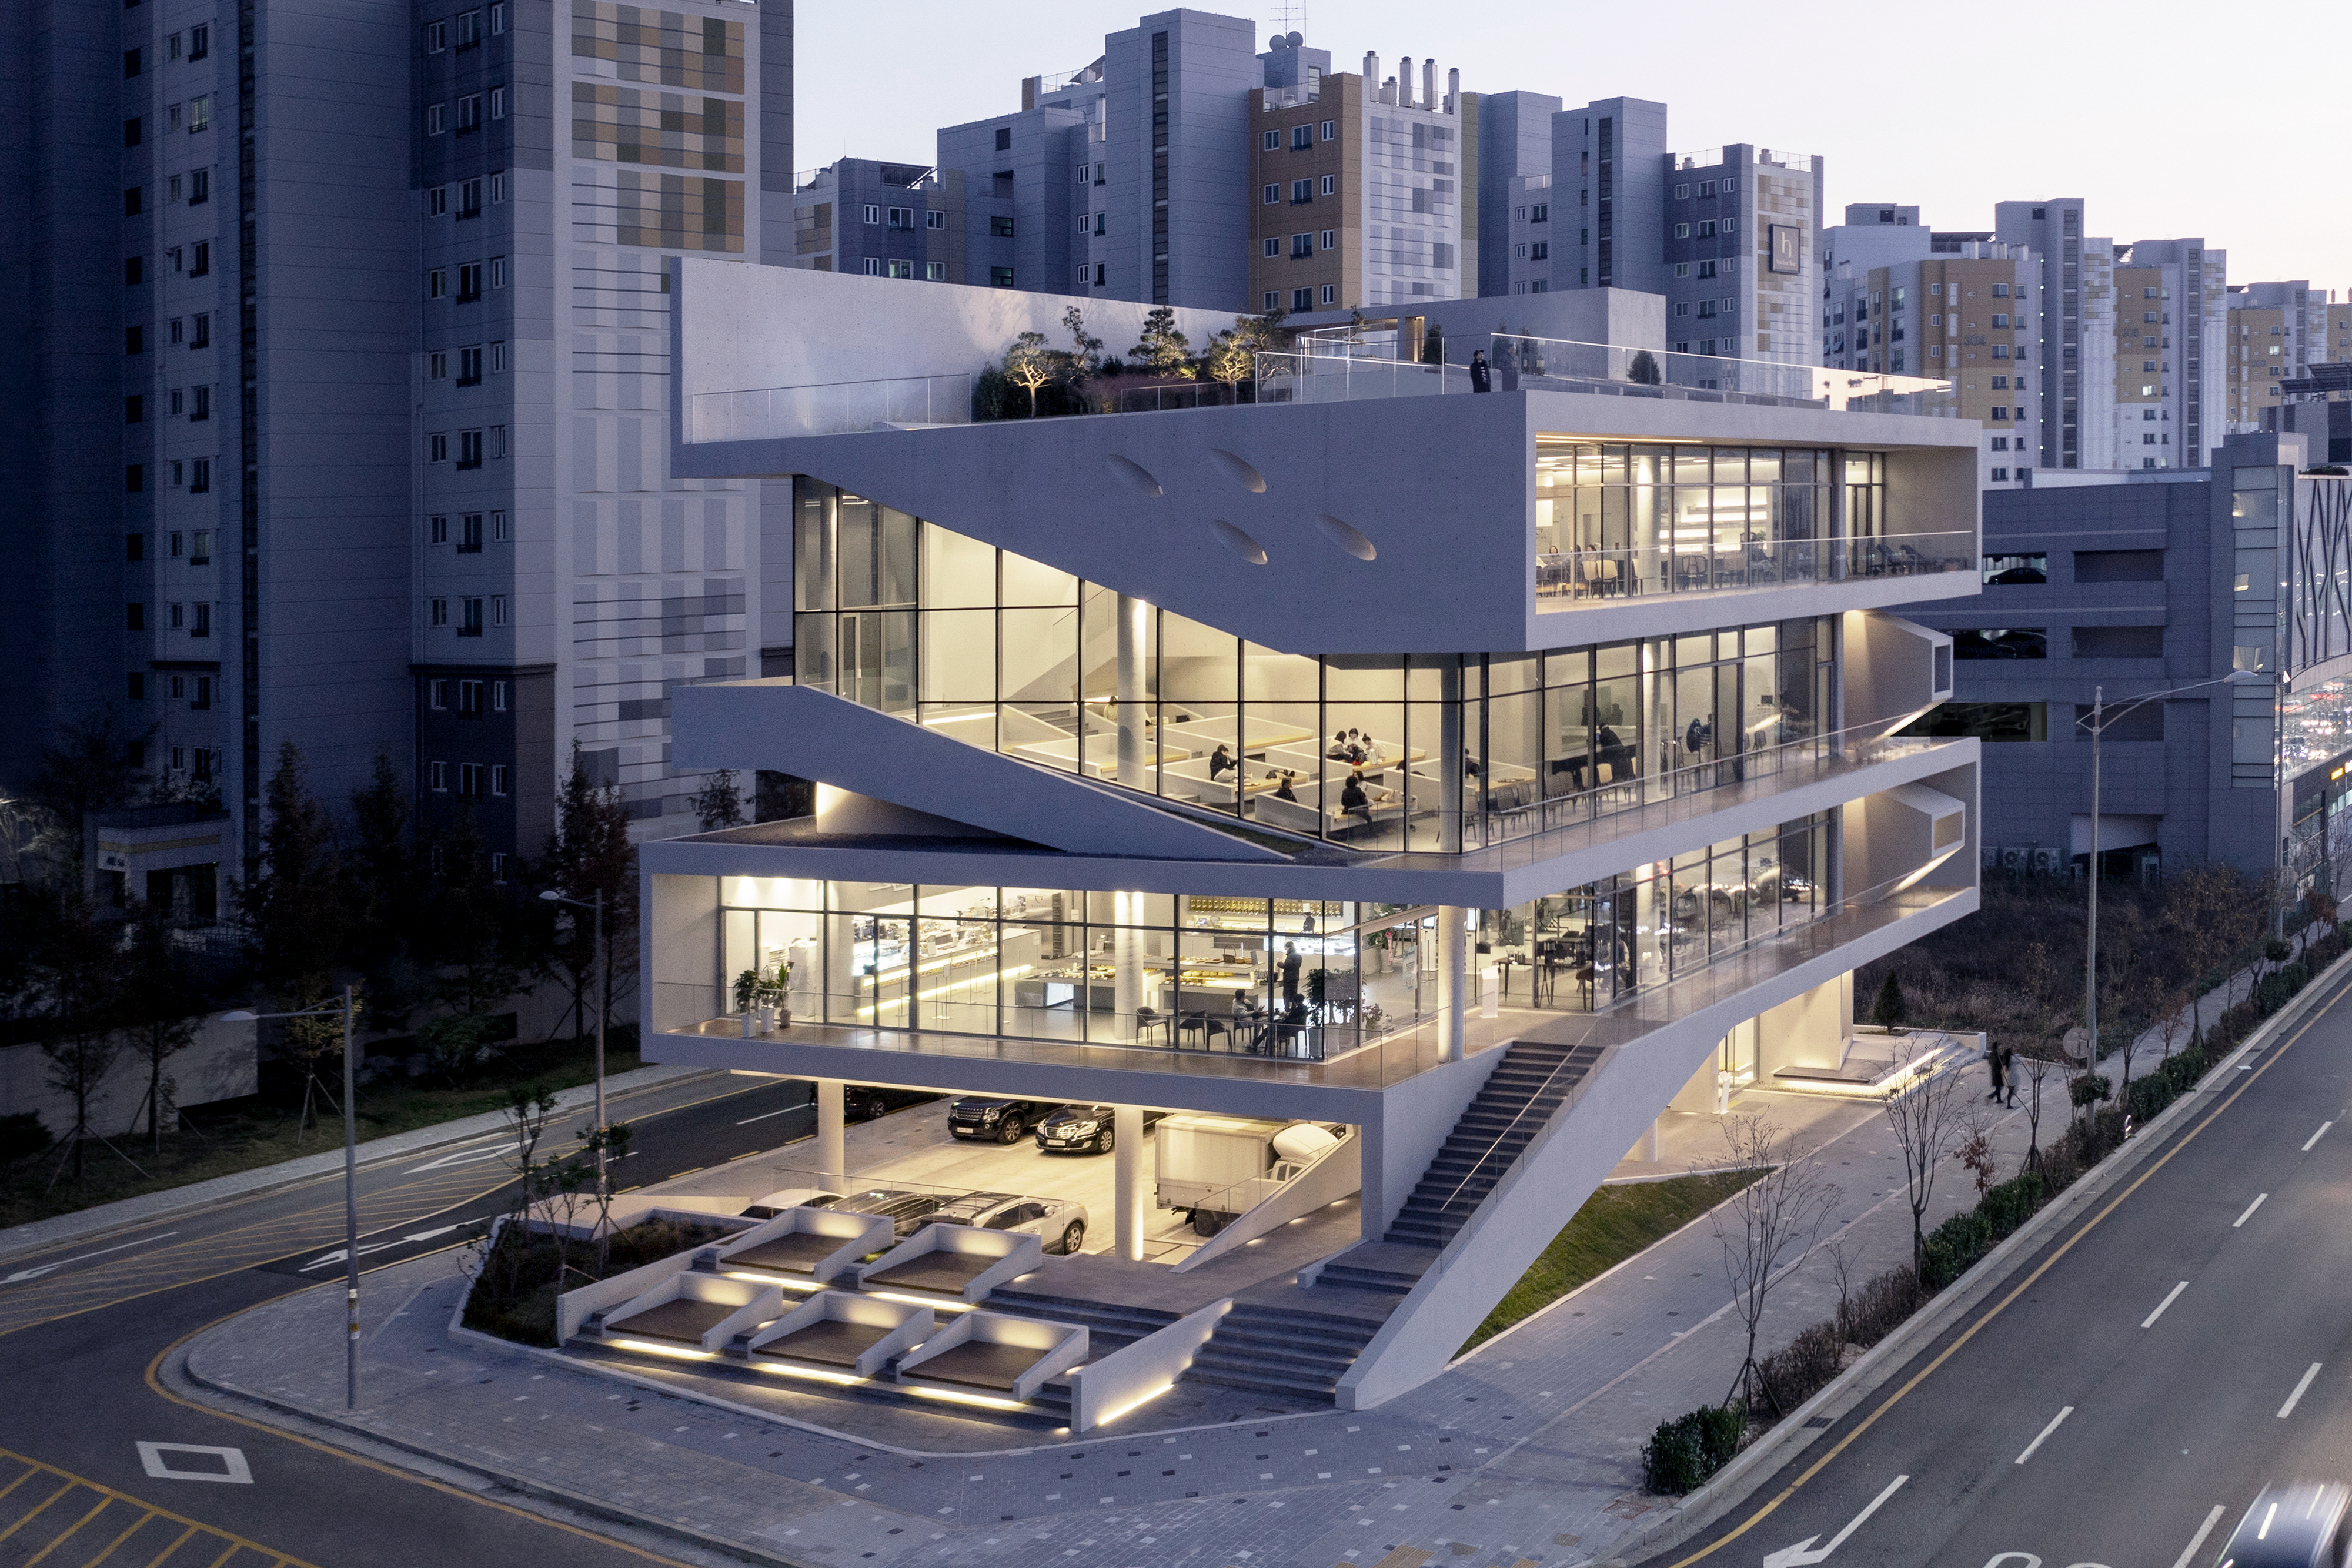 서울 항동 공공주택지구에 있는 ‘9로평상’은 평상을 하나의 디자인 요소로 가져온 실험적 건축물이다.  김재윤 작가 제공